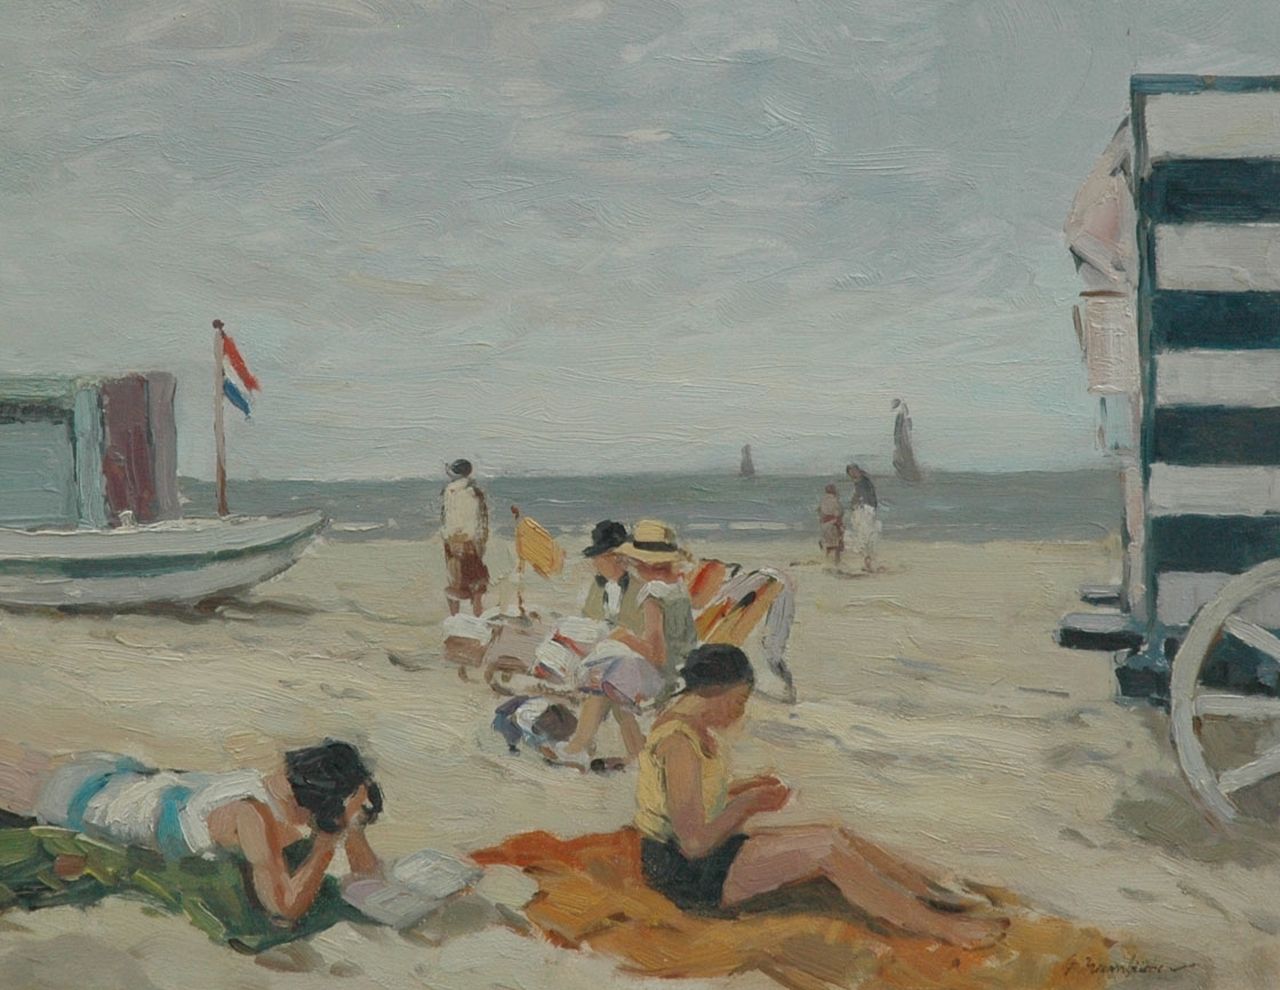 Hambüchen G.  | Georg Hambüchen, Op het strand, olieverf op paneel 36,0 x 45,5 cm, gesigneerd rechtsonder